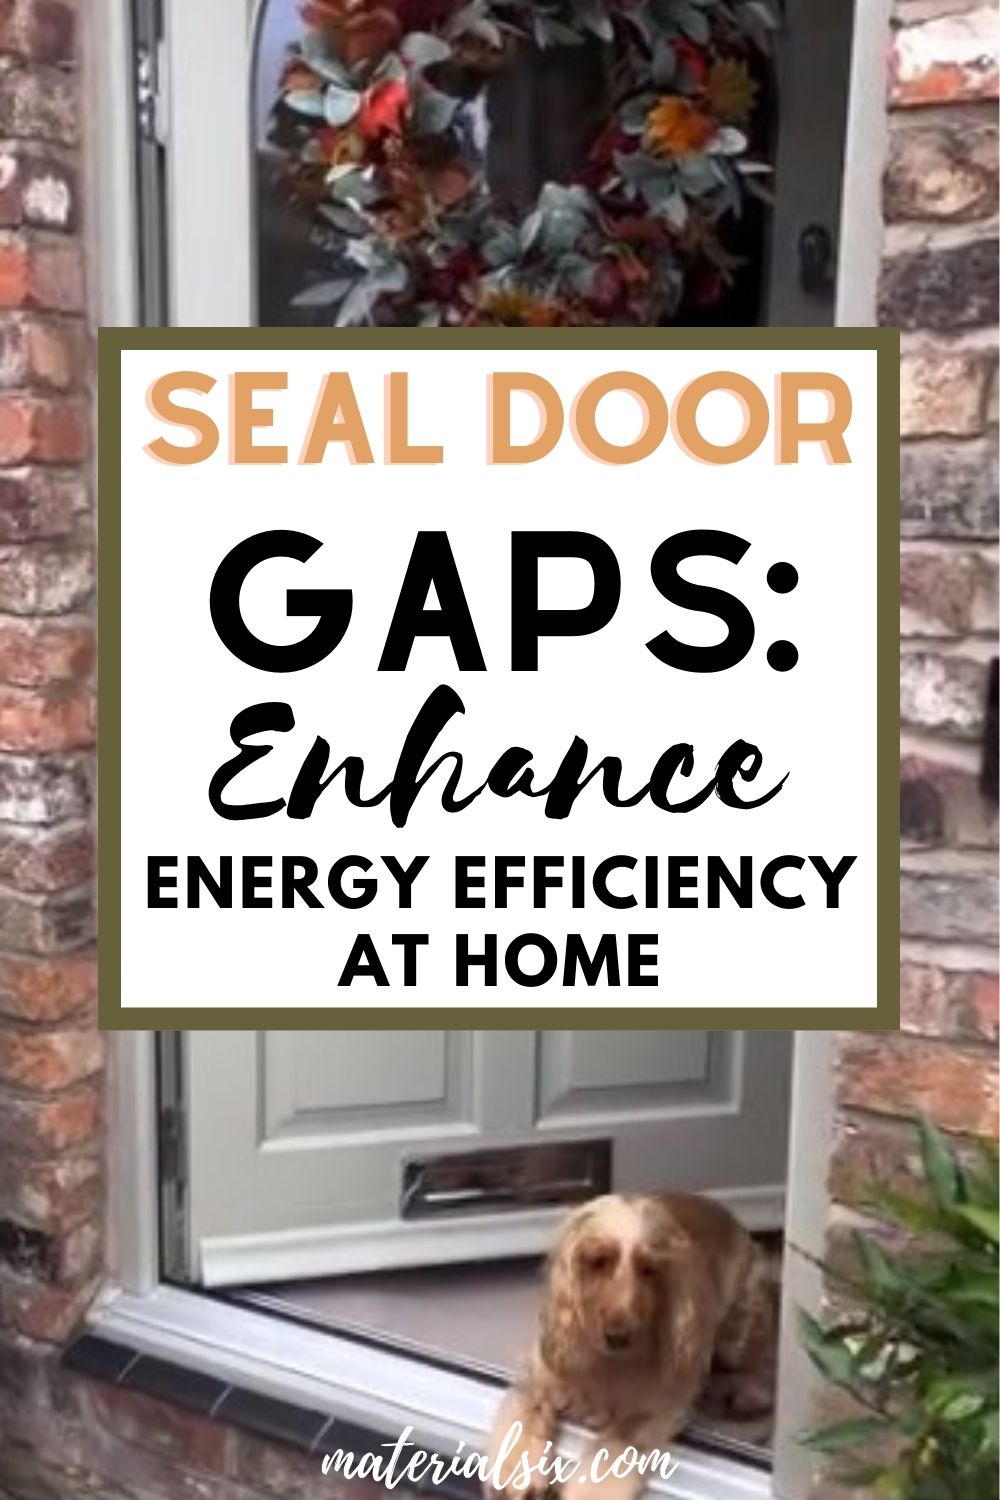 how to seal front door gaps